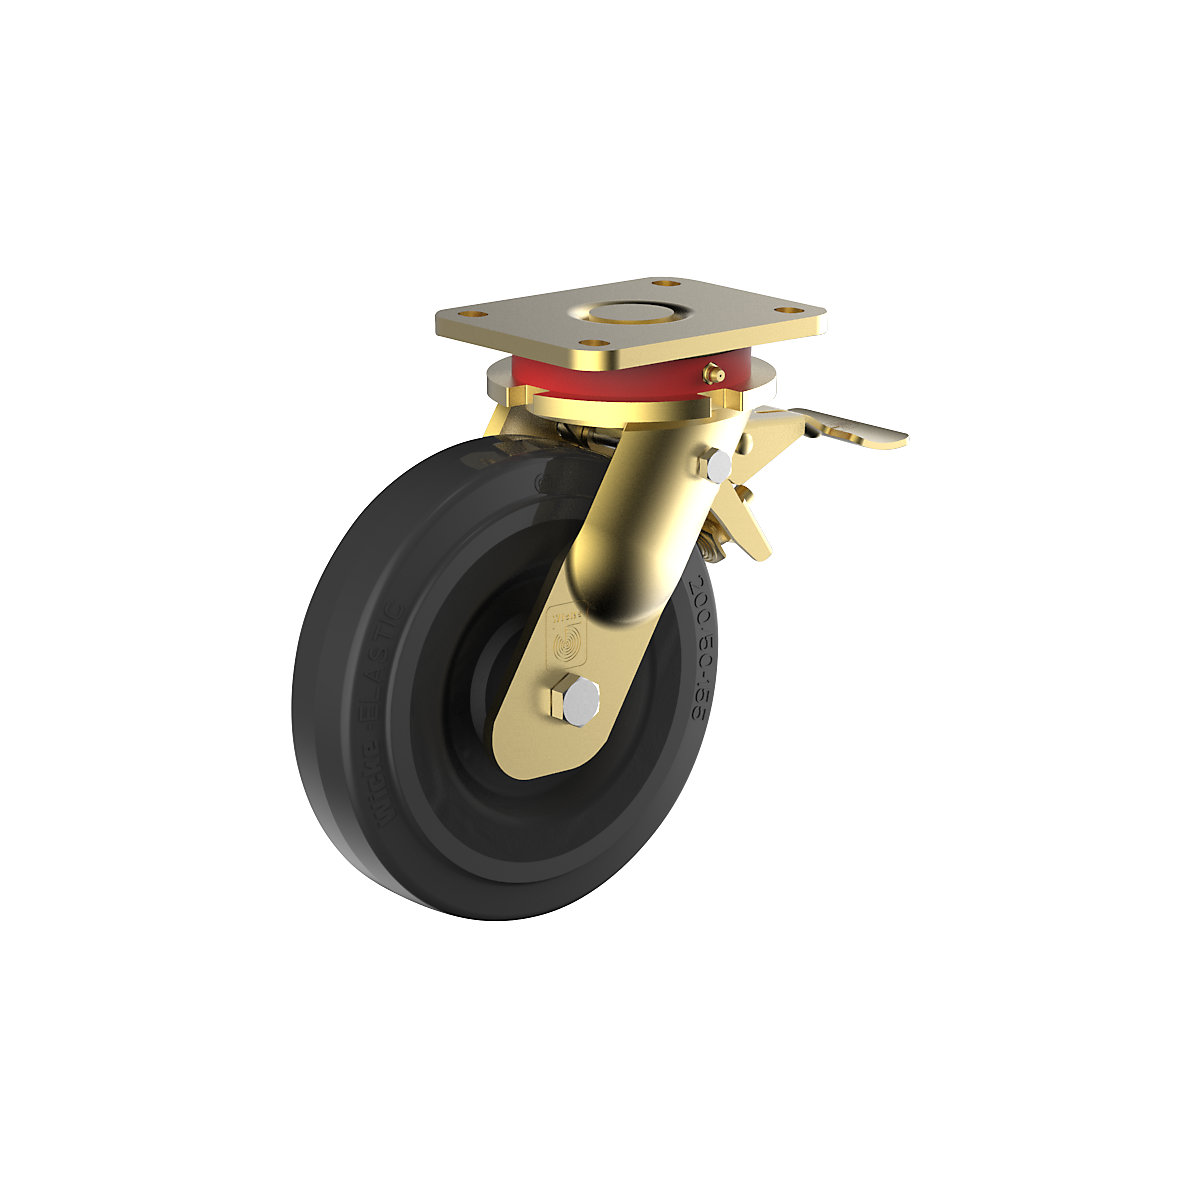 Roda de borracha maciça elástica, corpo em aço, soldada – Wicke, Ø da roda x largura 200 x 80 mm, roda orientável com bloqueio duplo-2